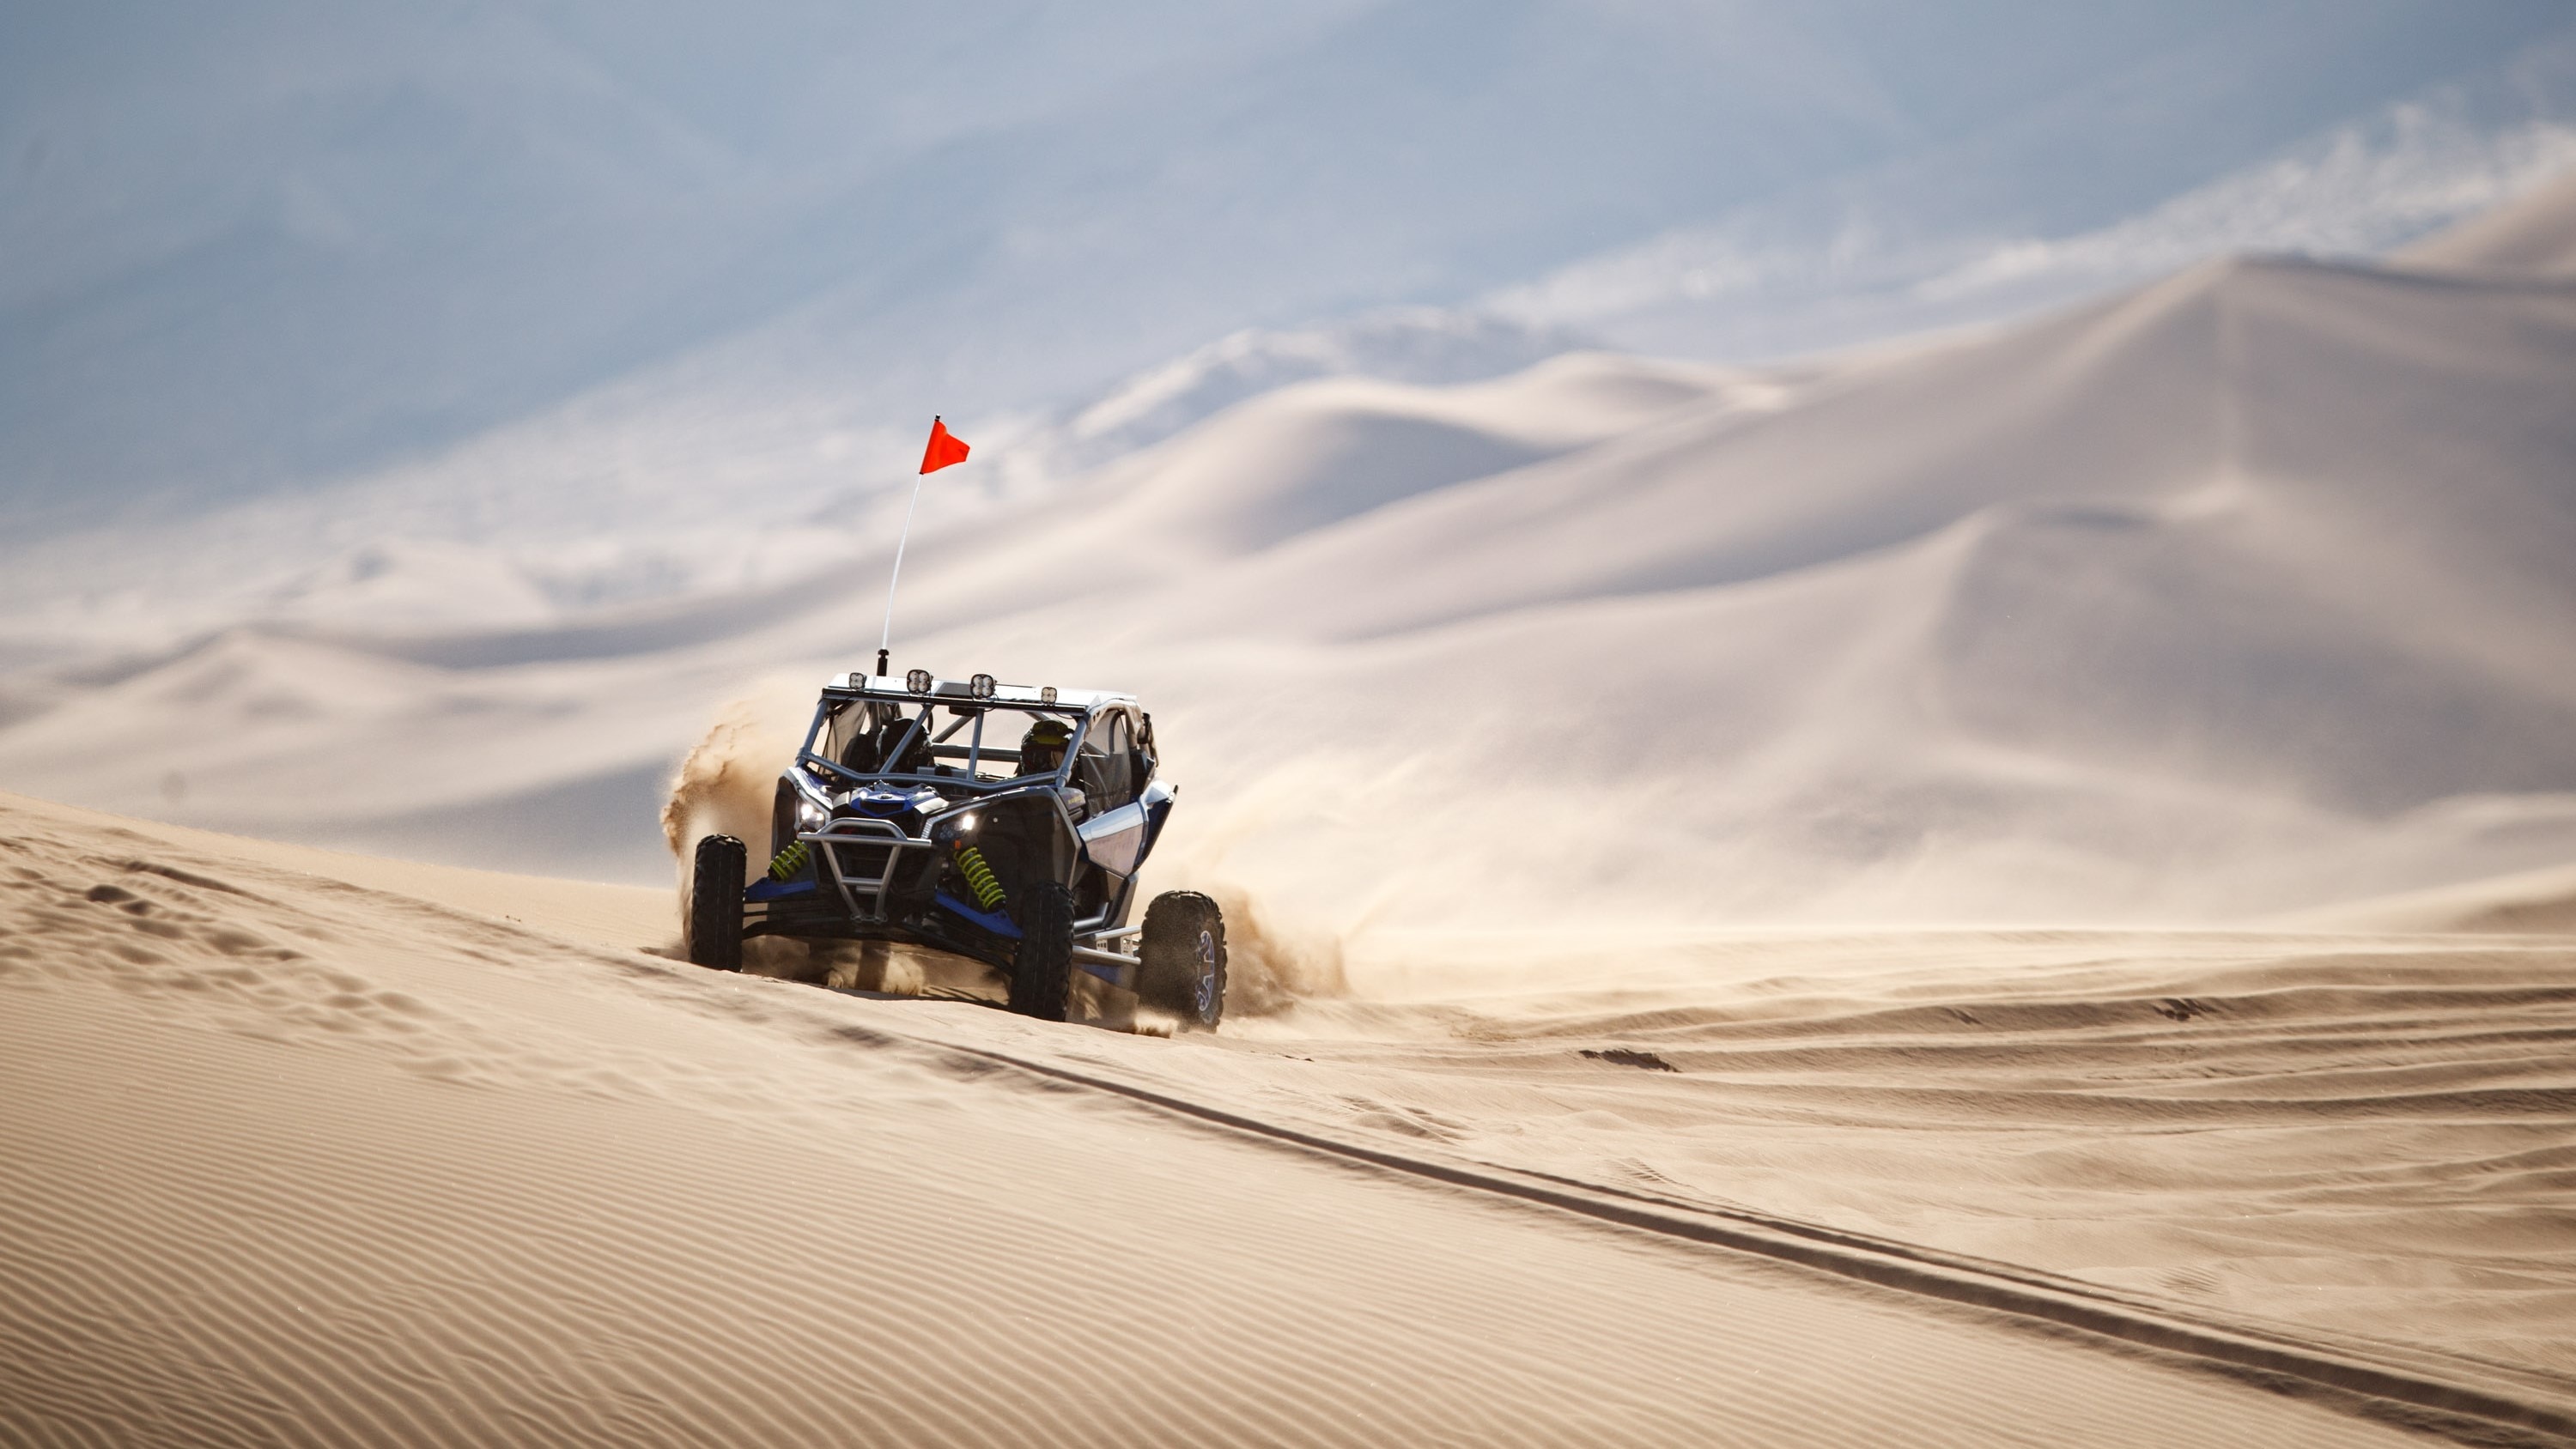 Maverick X3 RS TURBO RR racing through dunes, throwing up sand